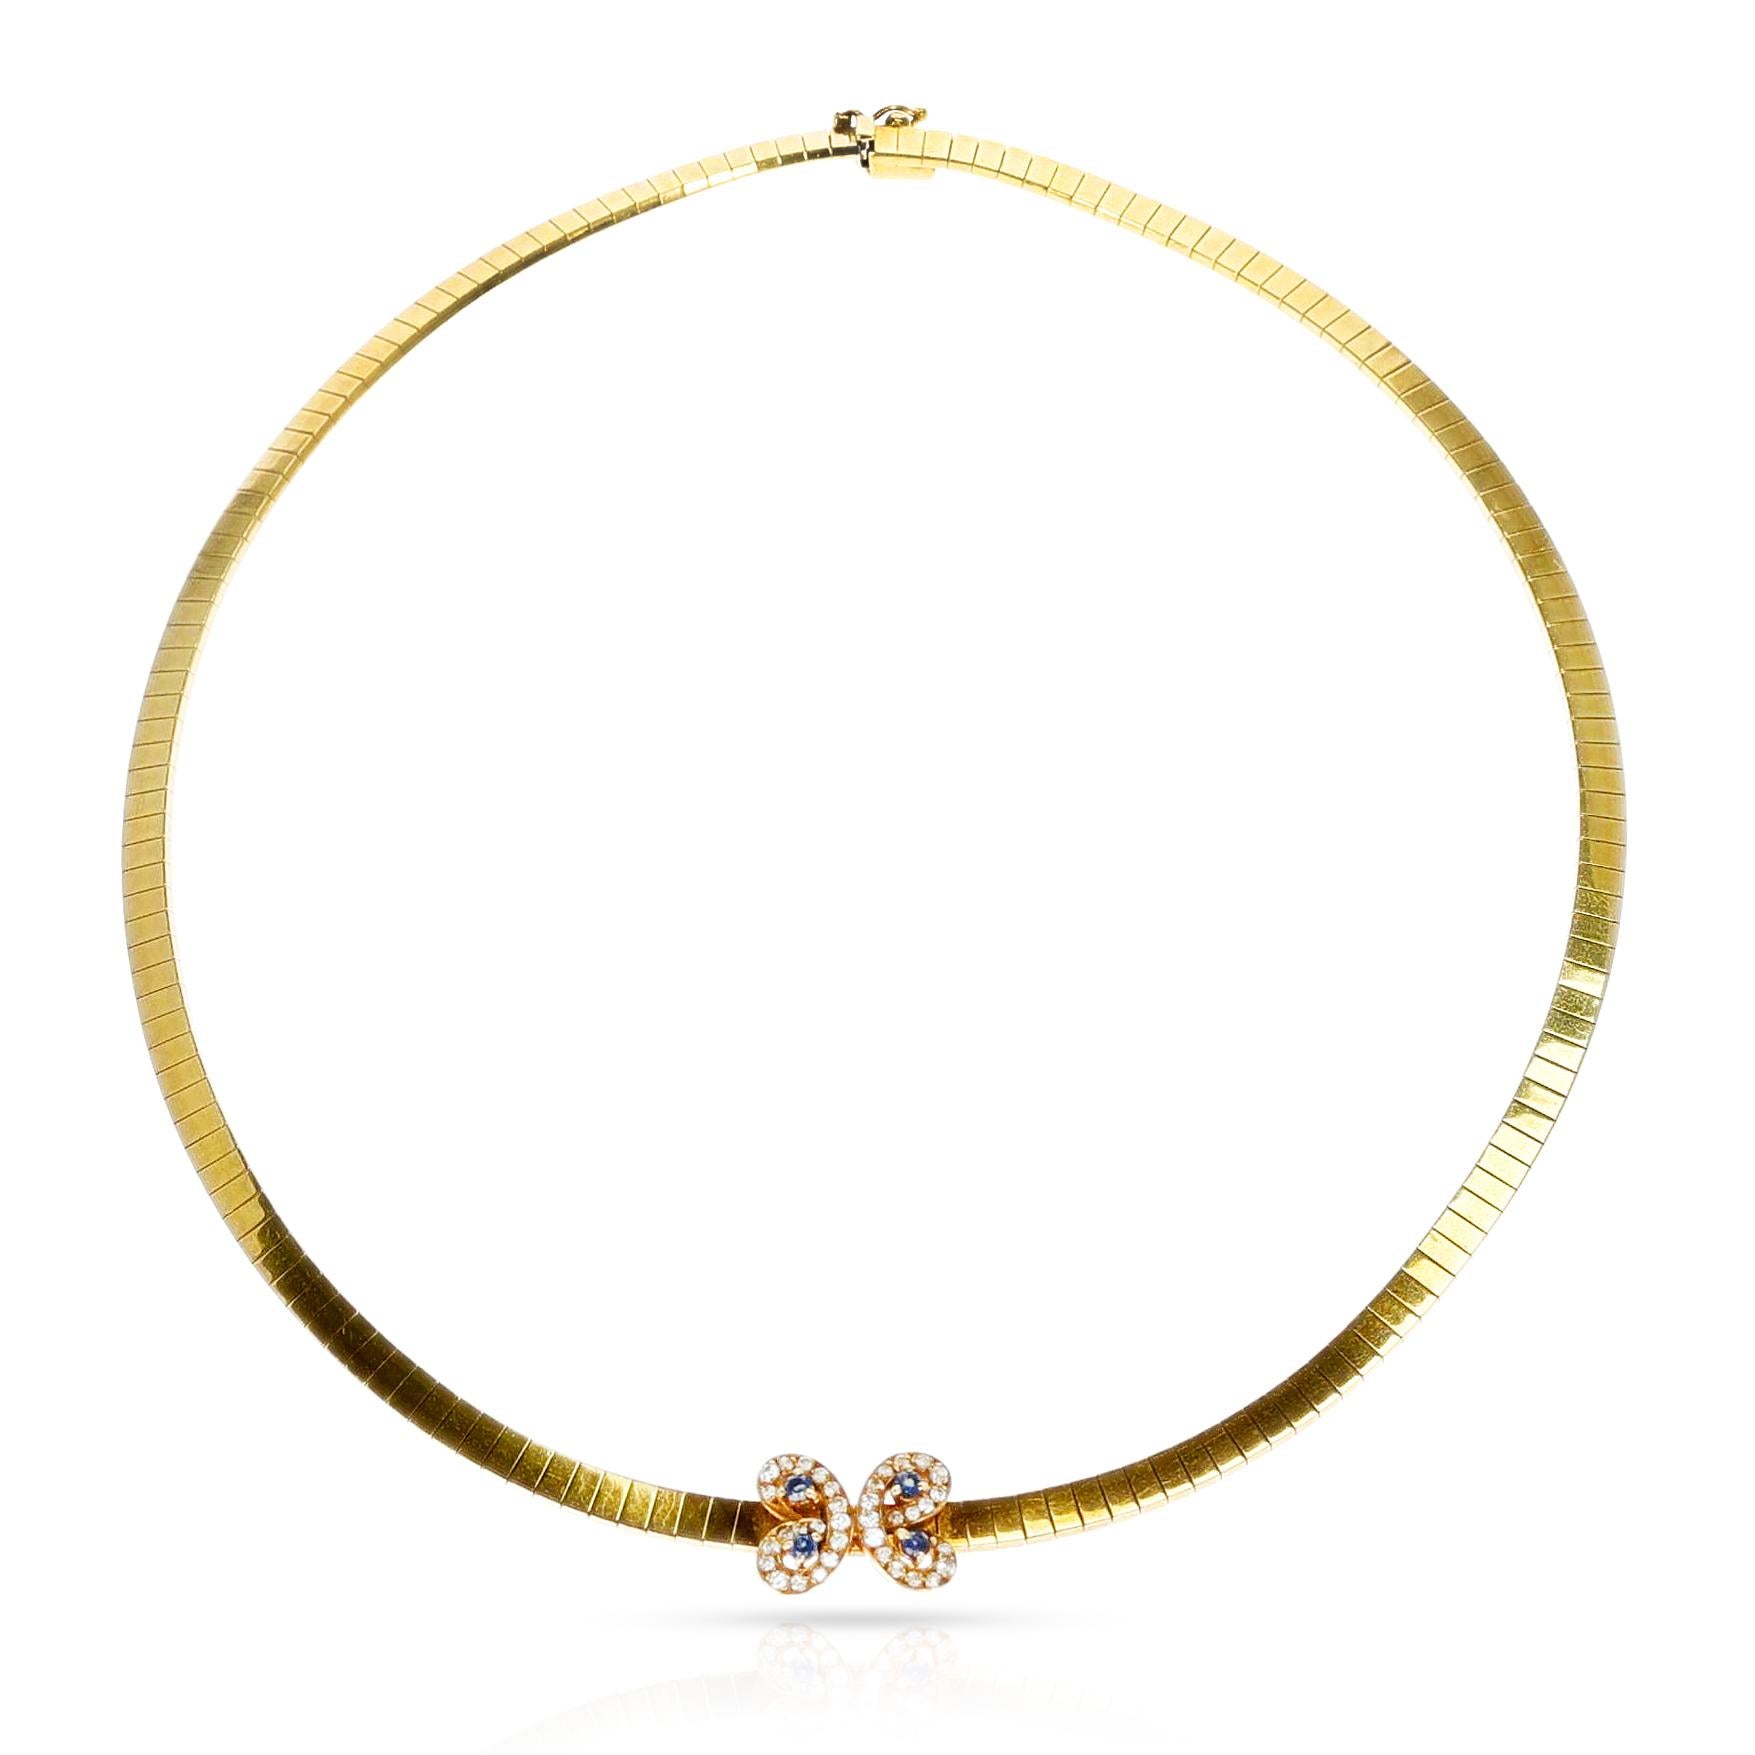 Diese Van Cleef & Arpels Butterfly Sapphire and Diamond Choker Necklace ist aus 18 Karat Gelbgold gefertigt und zeigt ein Schmetterlingsdesign, das mit runden Saphiren und runden Brillanten besetzt ist. Diese raffinierte Halskette ist in Gewicht und